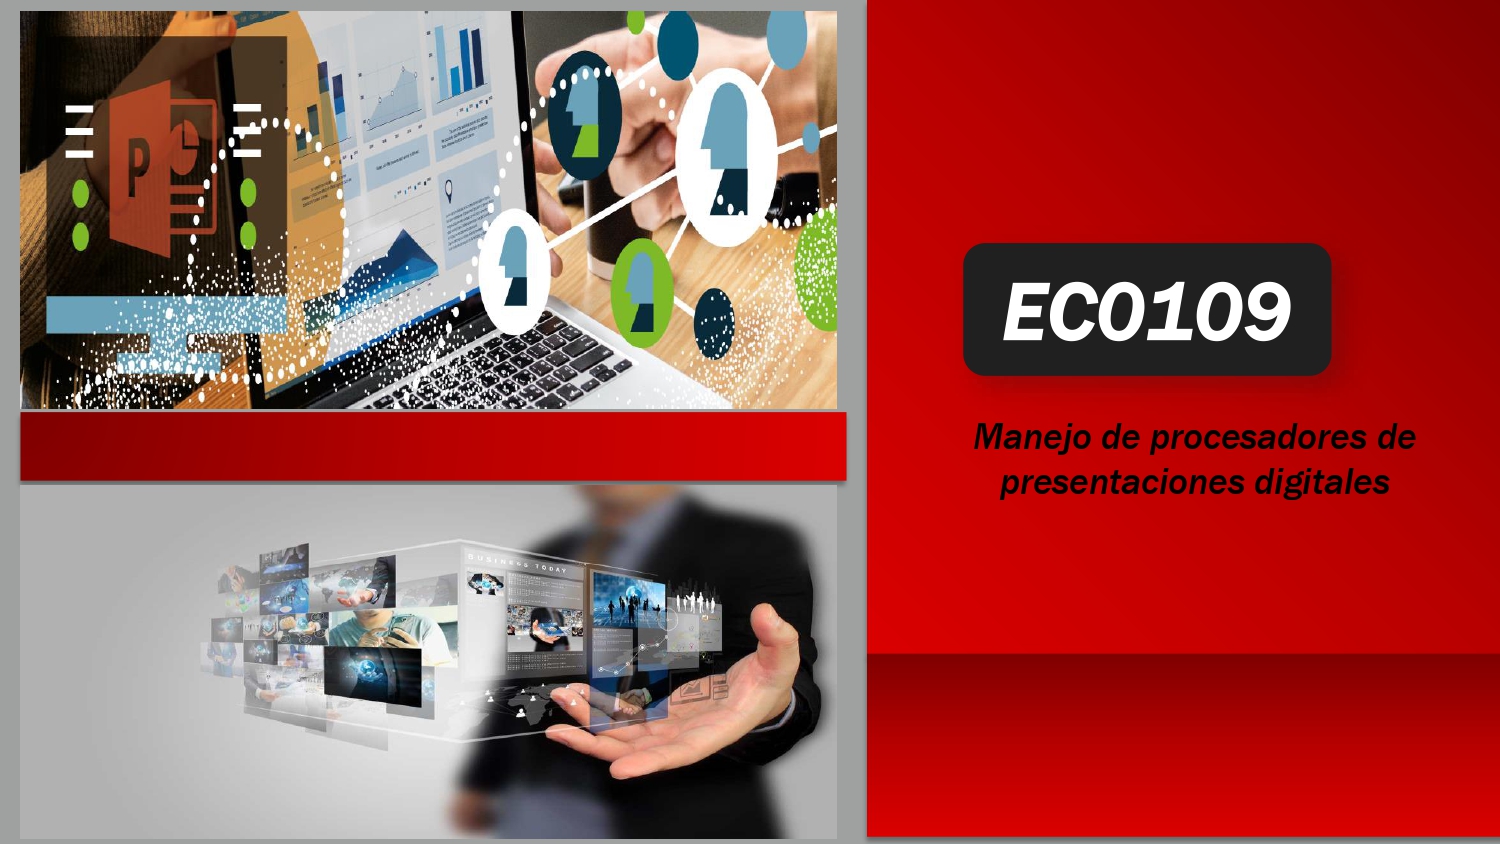 EC0109 Manejo de procesadores de presentaciones digitales